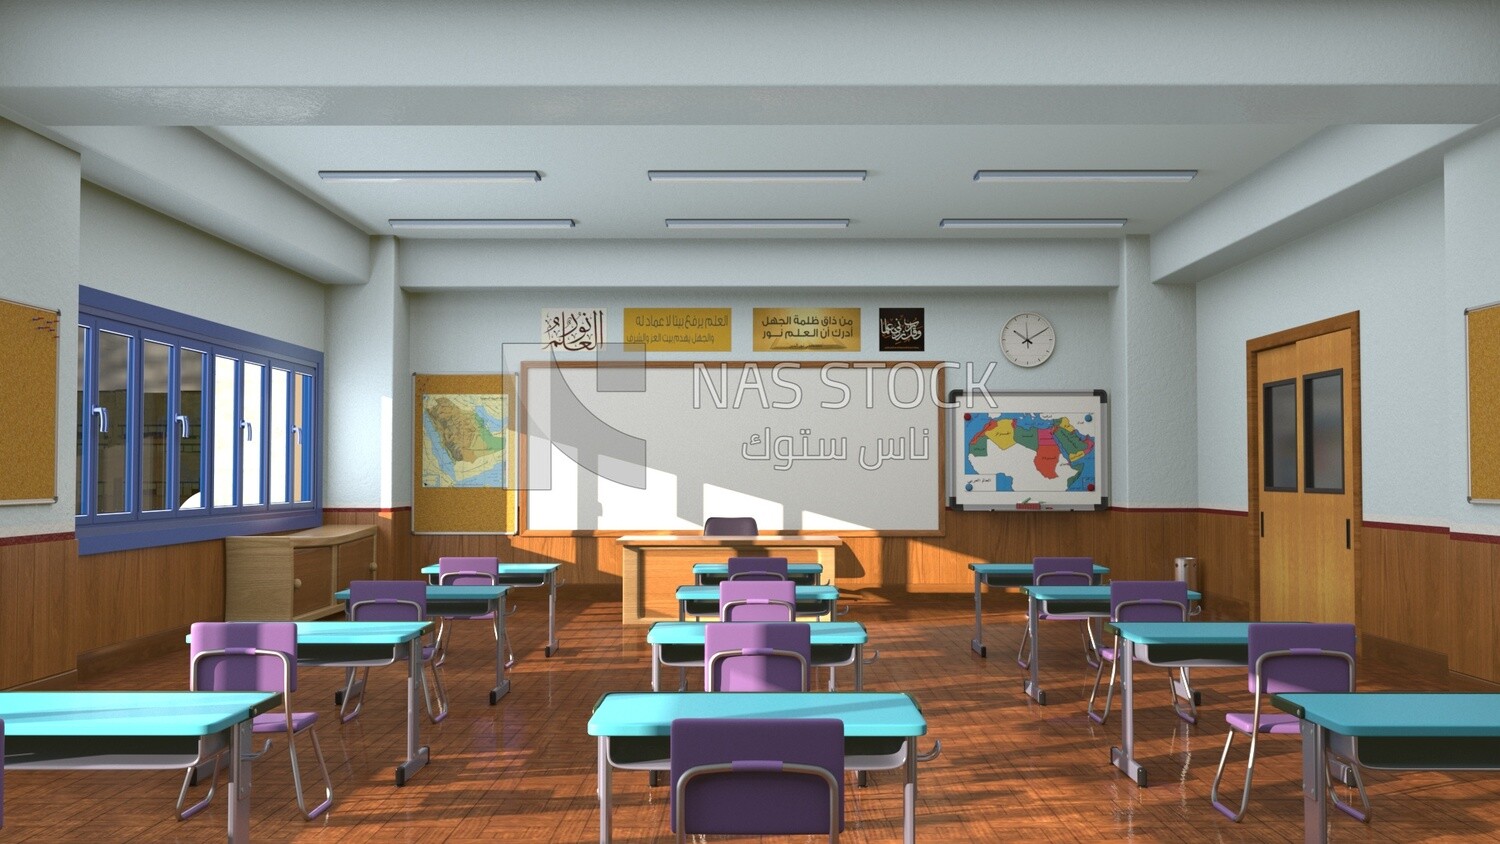 3D Model of classroom